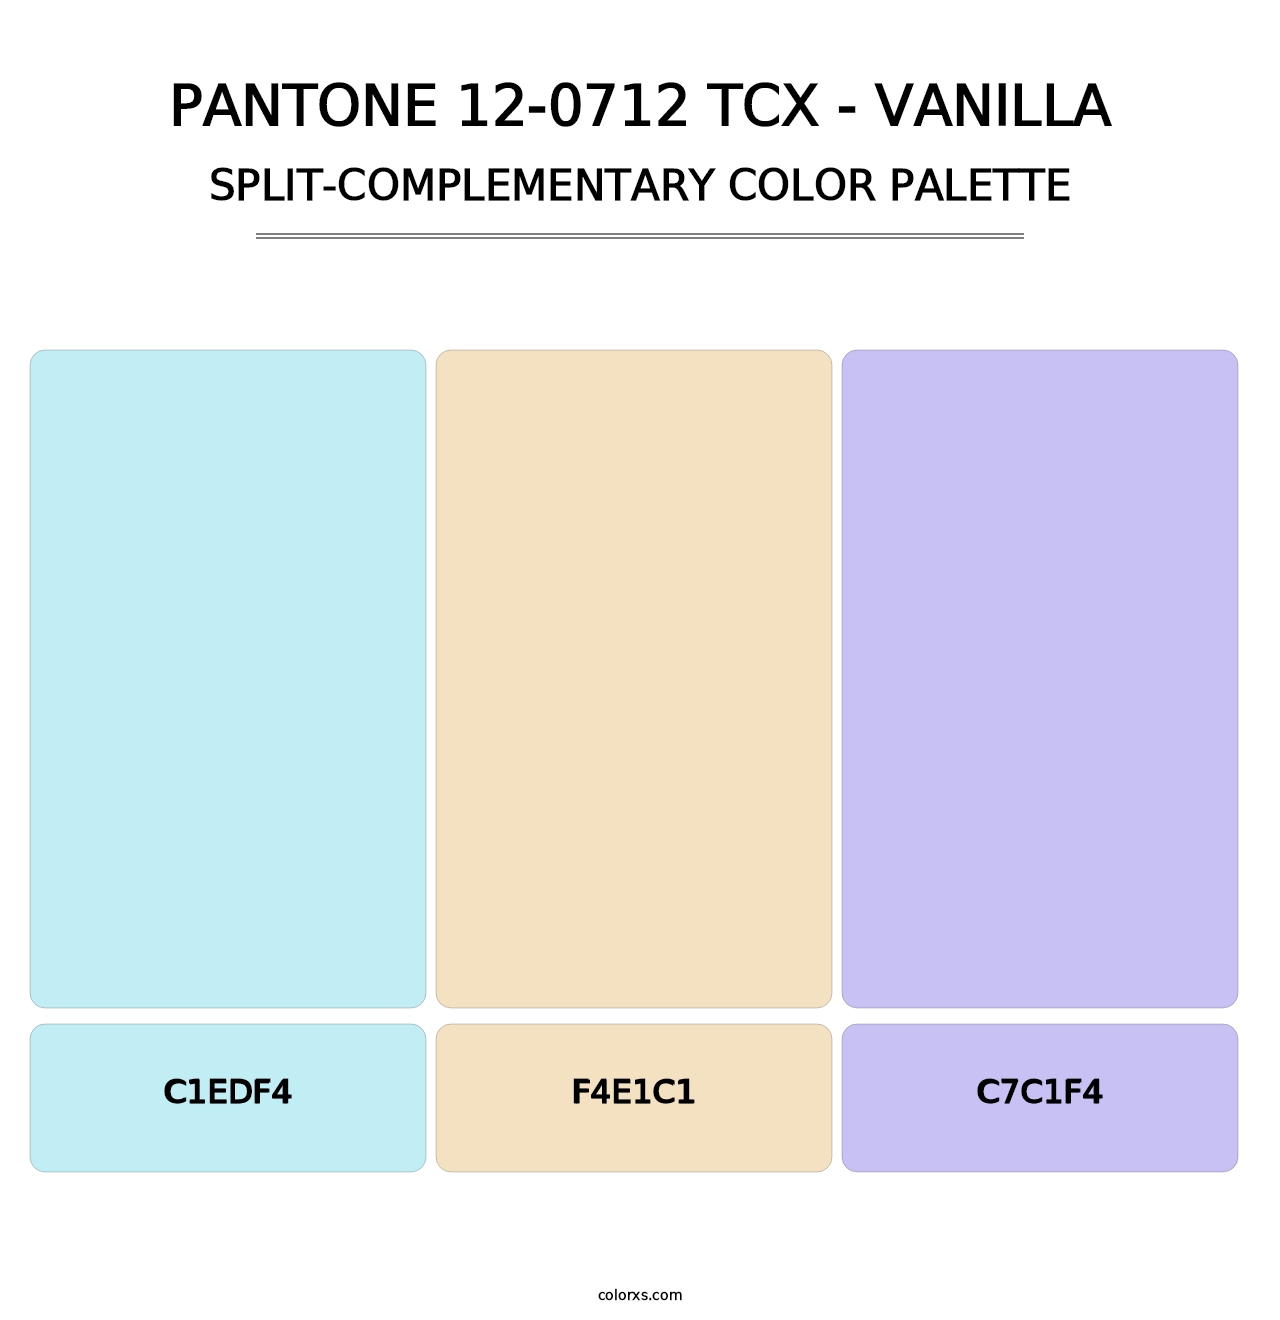 PANTONE 12-0712 TCX - Vanilla - Split-Complementary Color Palette